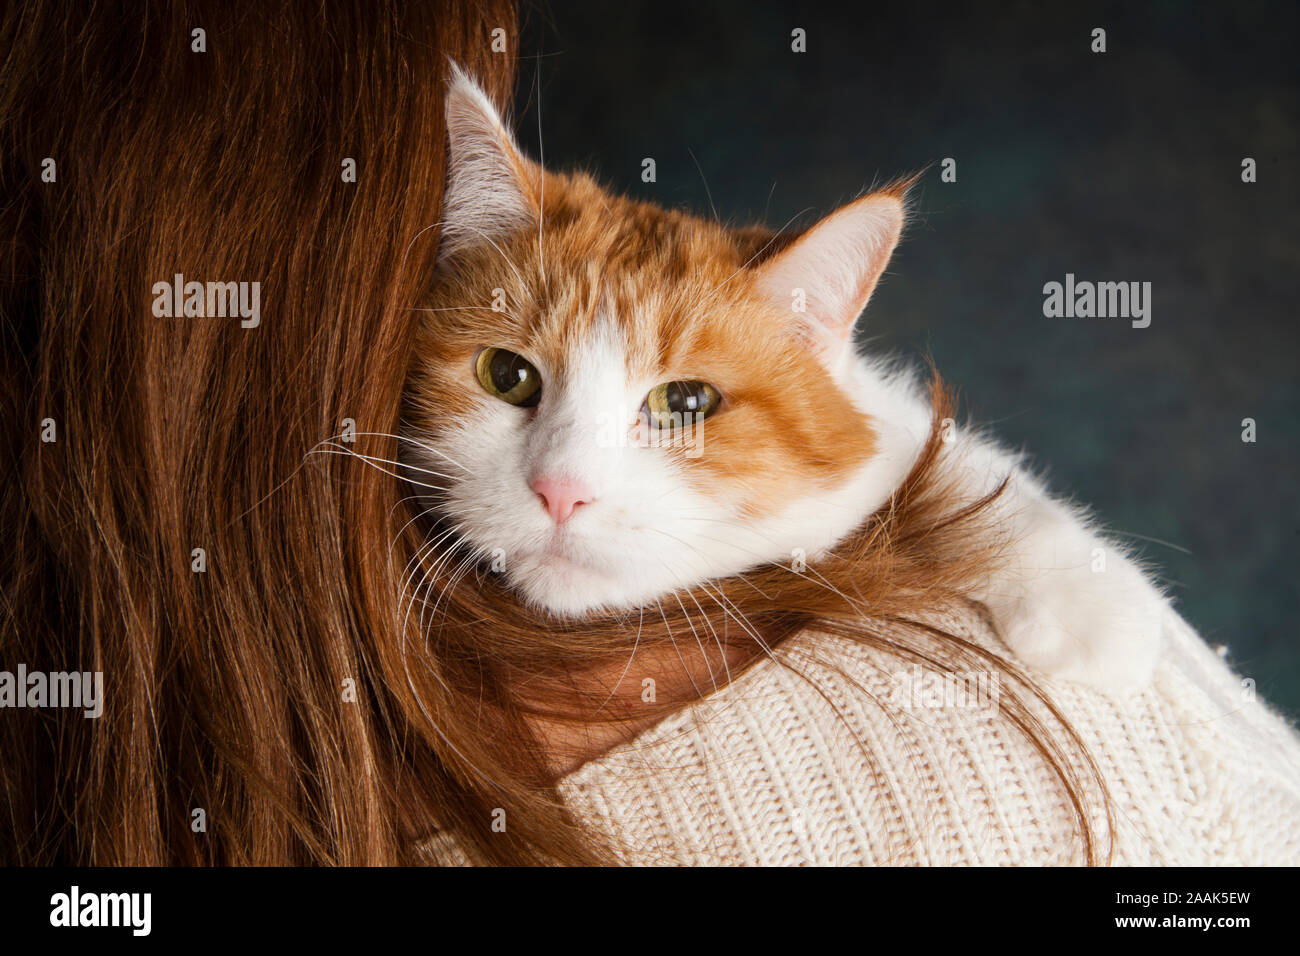 Close-up of white et le gingembre cat sur l'épaule de femme Banque D'Images